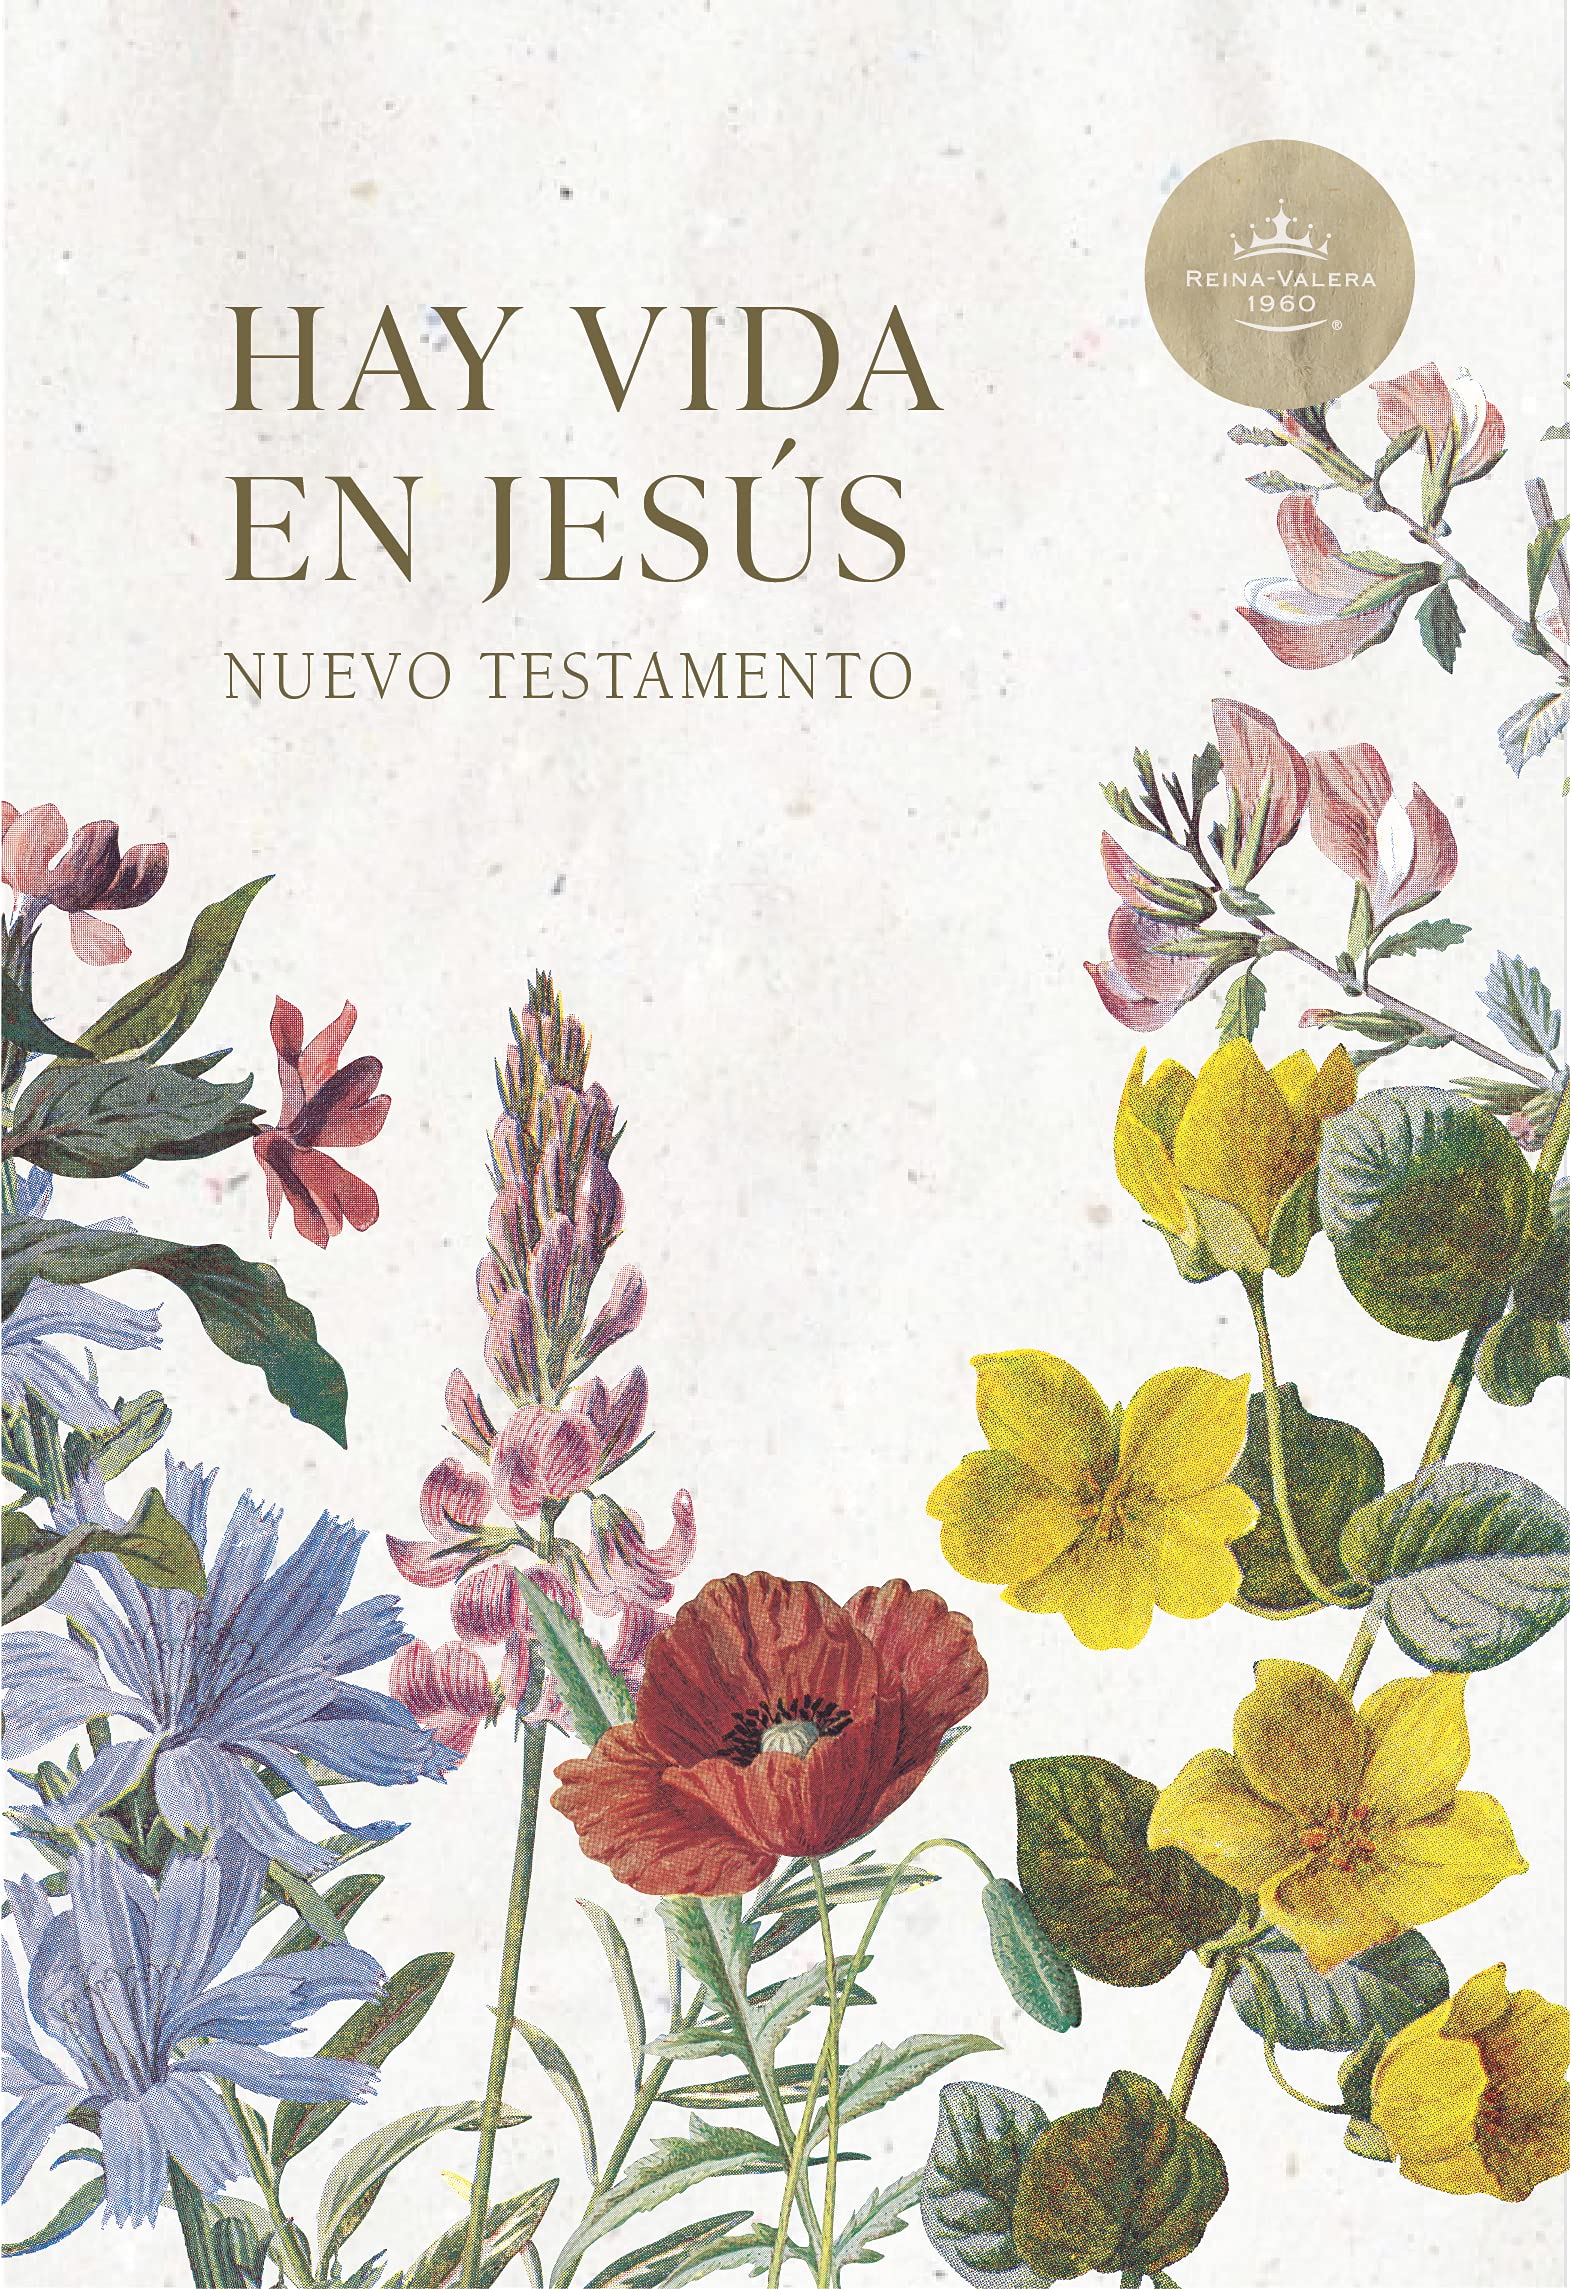 Nuevo Testamento Hay Vida en Jesús -RVR60 - Librería Libros Cristianos - Libro